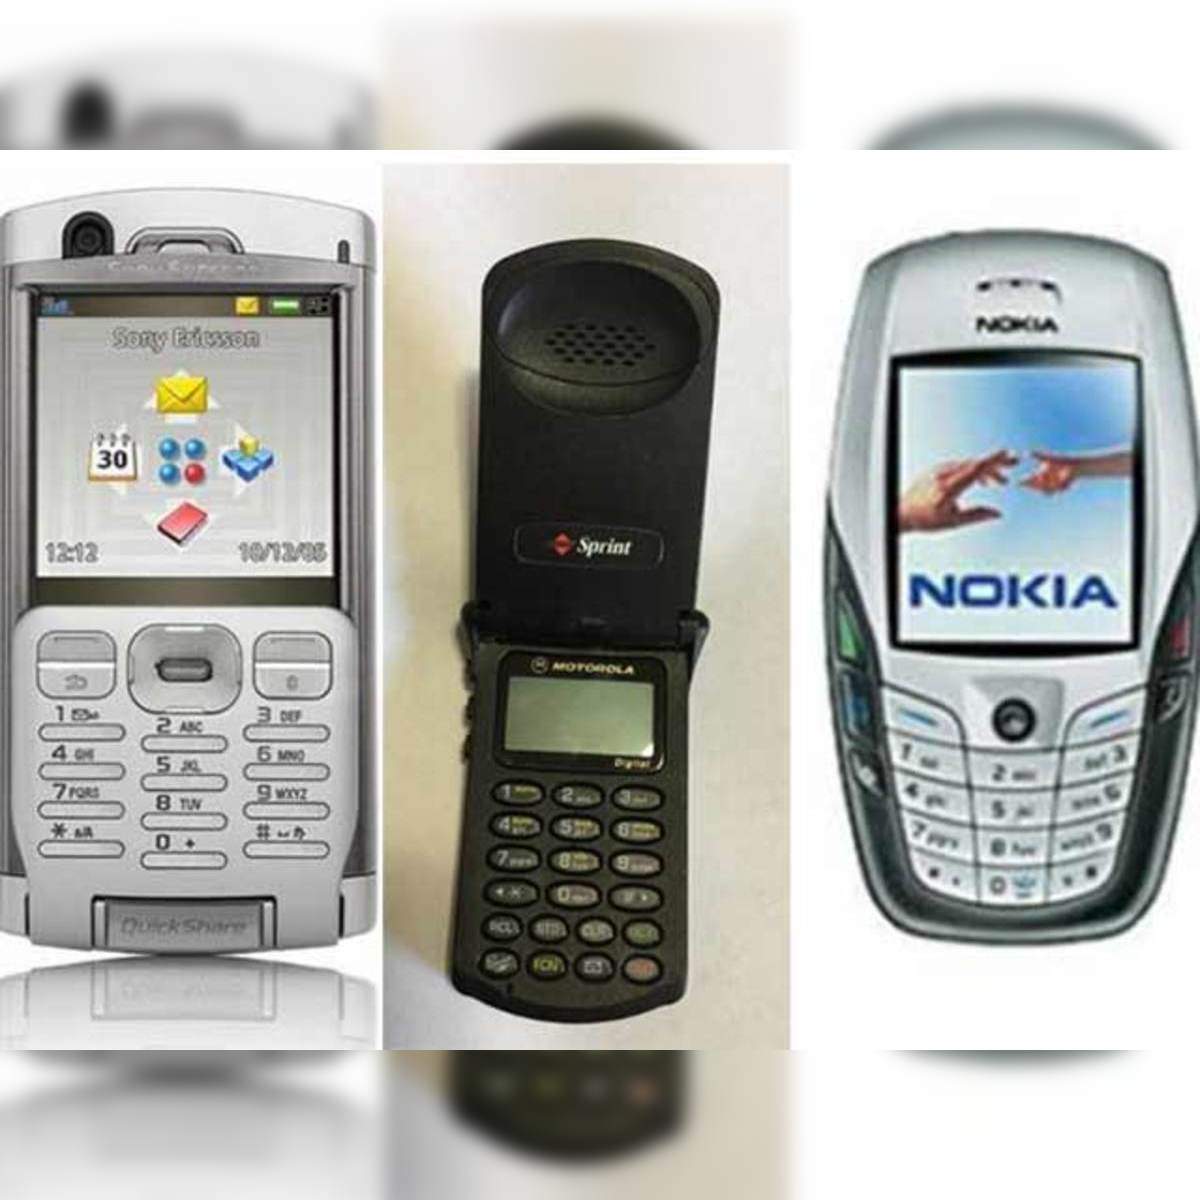 Nokia 8110 - Wikipedia